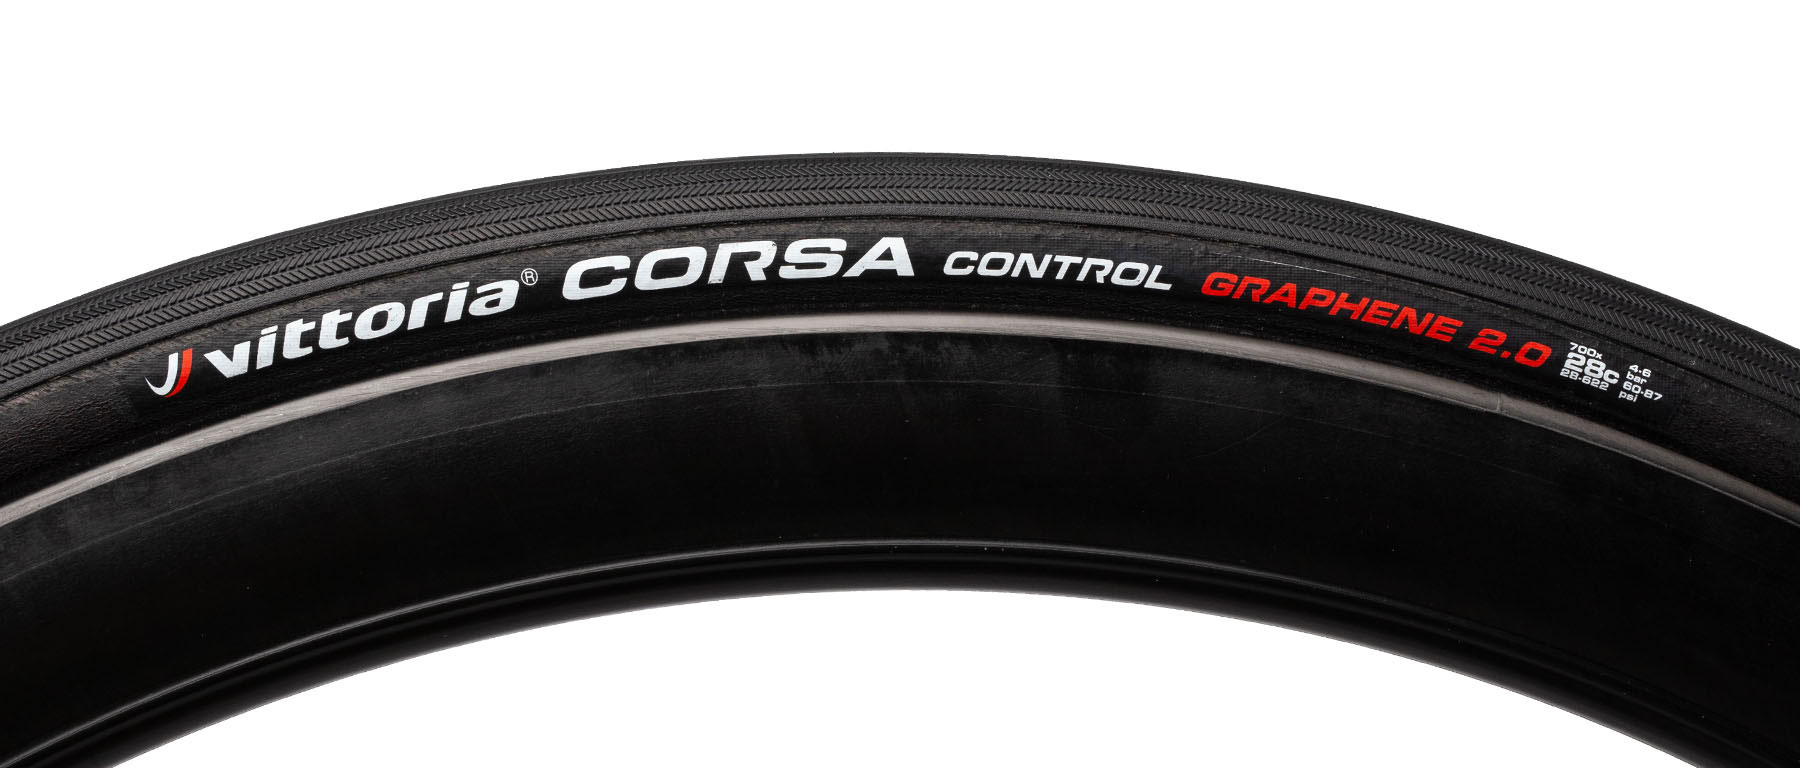 Vittoria Corsa Control G2.0 Road Tire